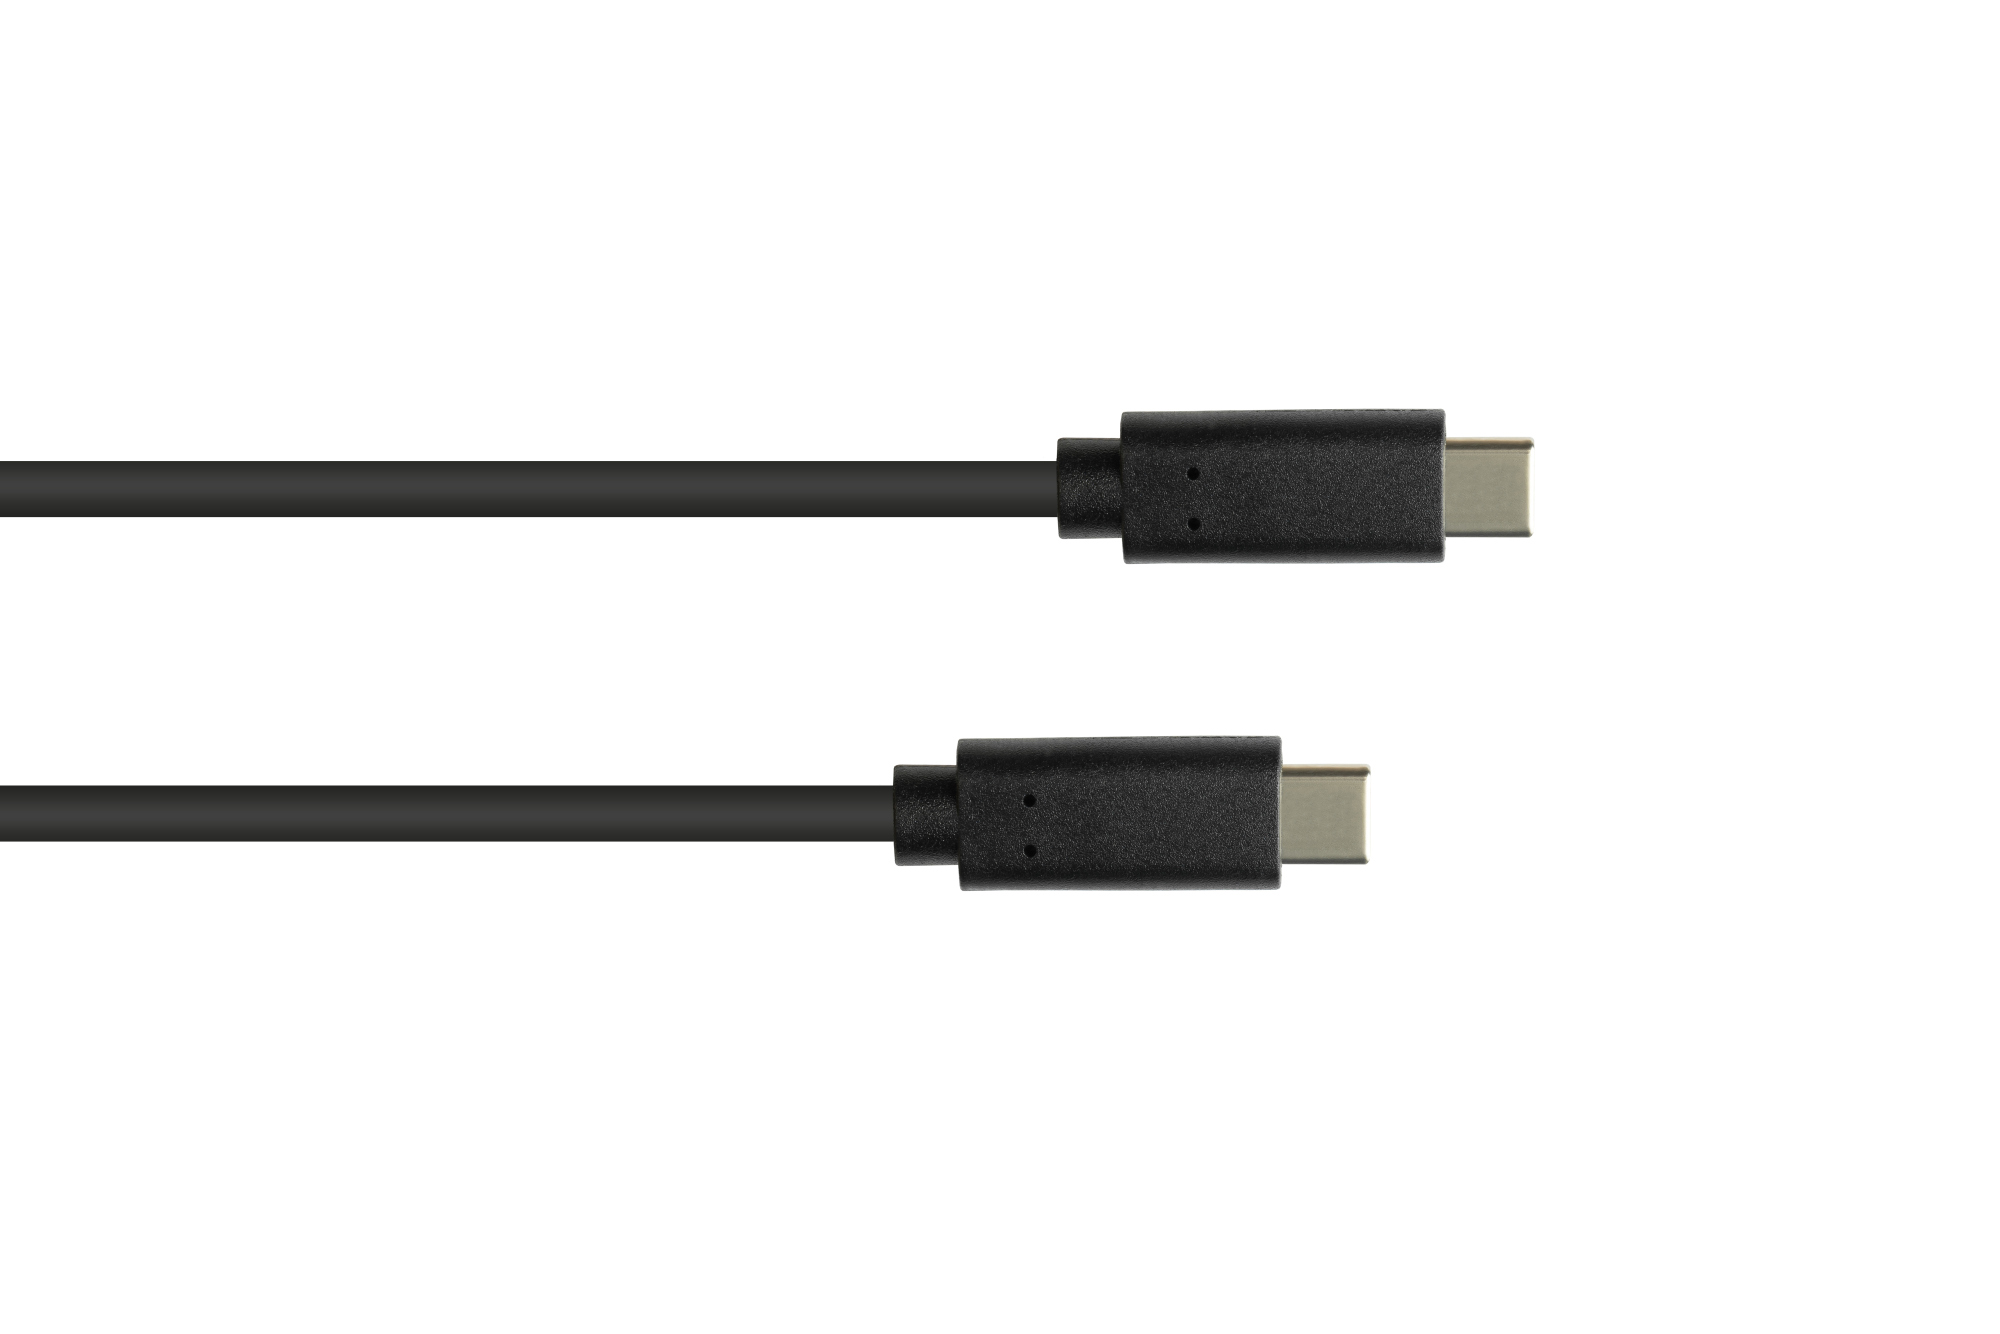 Lade- und Datenkabel USB 3.1 (Gen.1), USB-C™ Stecker beidseitig, CU, schwarz, 1,5m, Good Connections